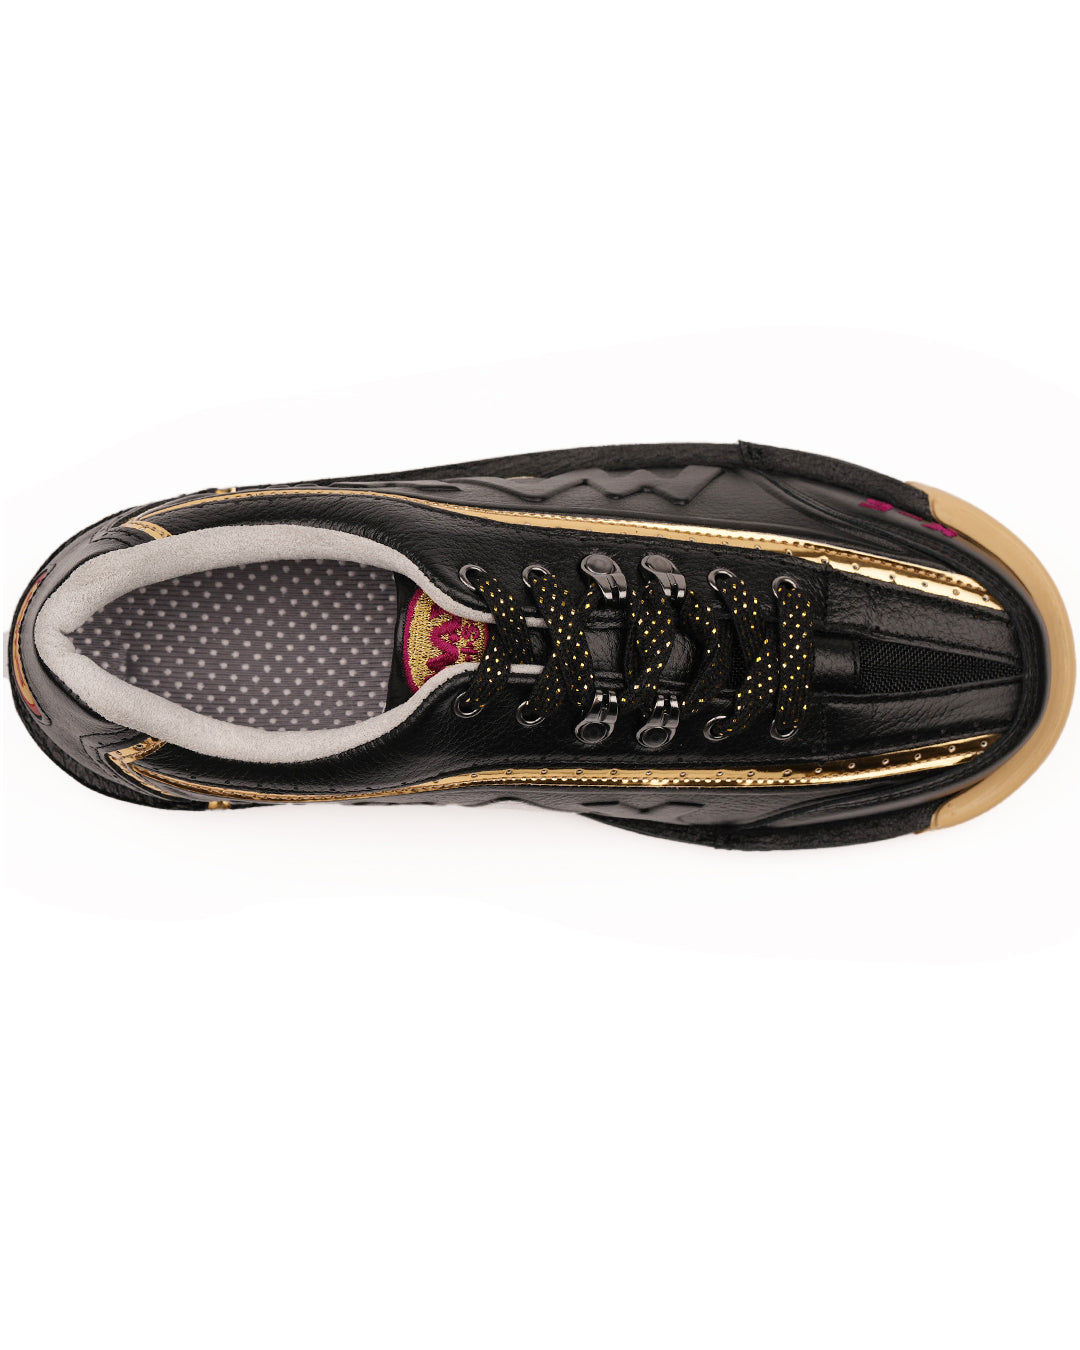 maxwelter k-5 k5 bowling shoes kangaroo leather black premium top